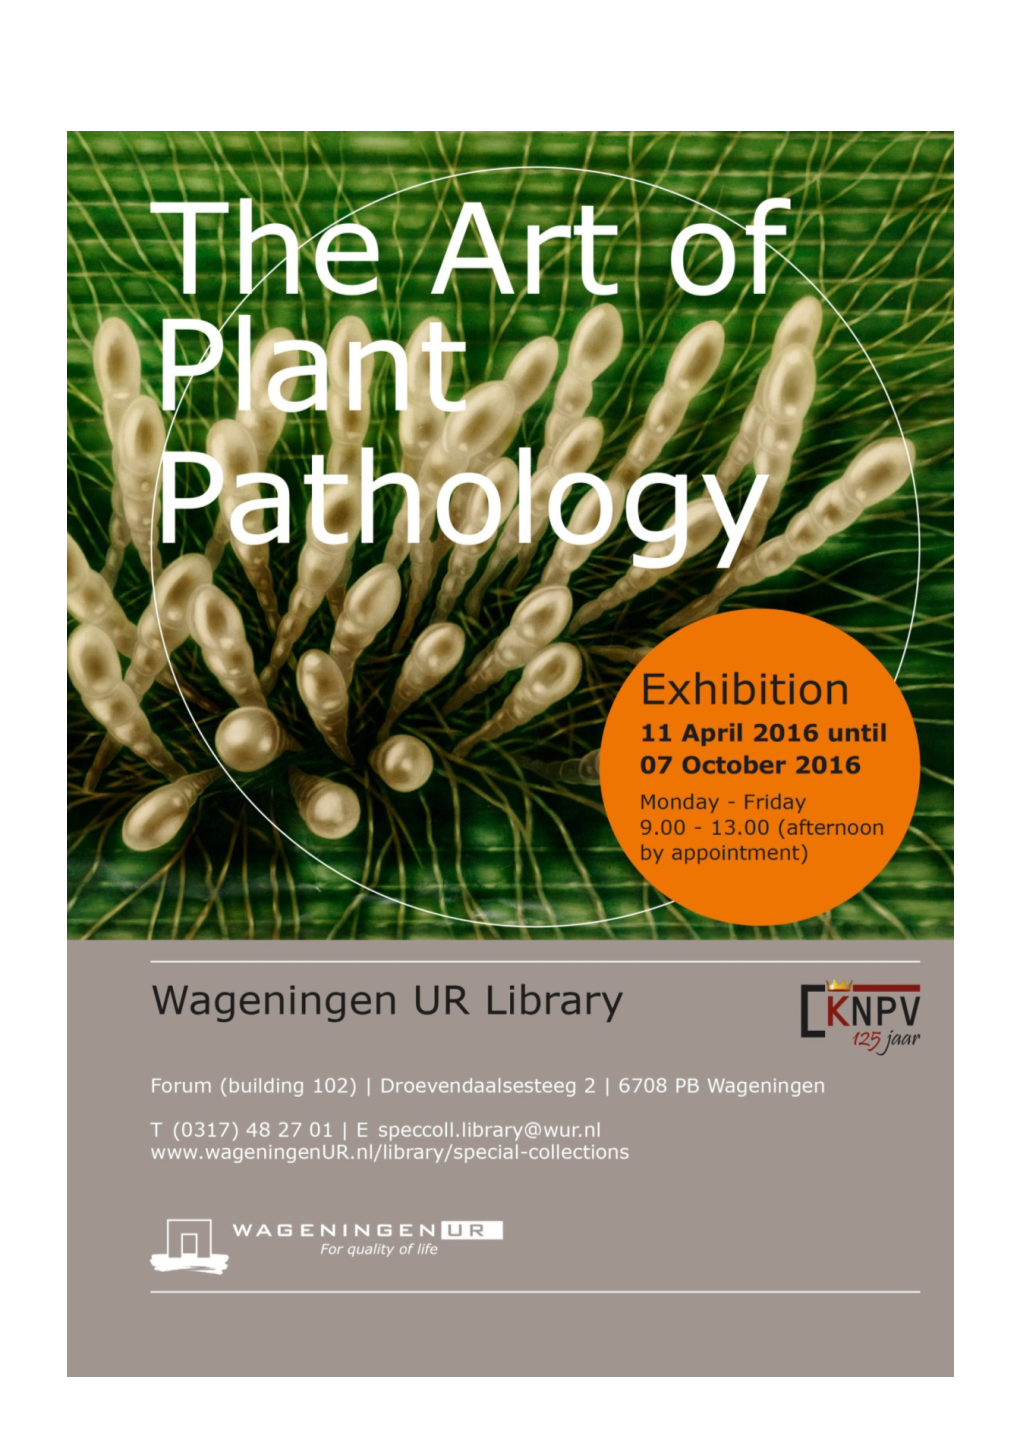 The Art of Plant Pathology